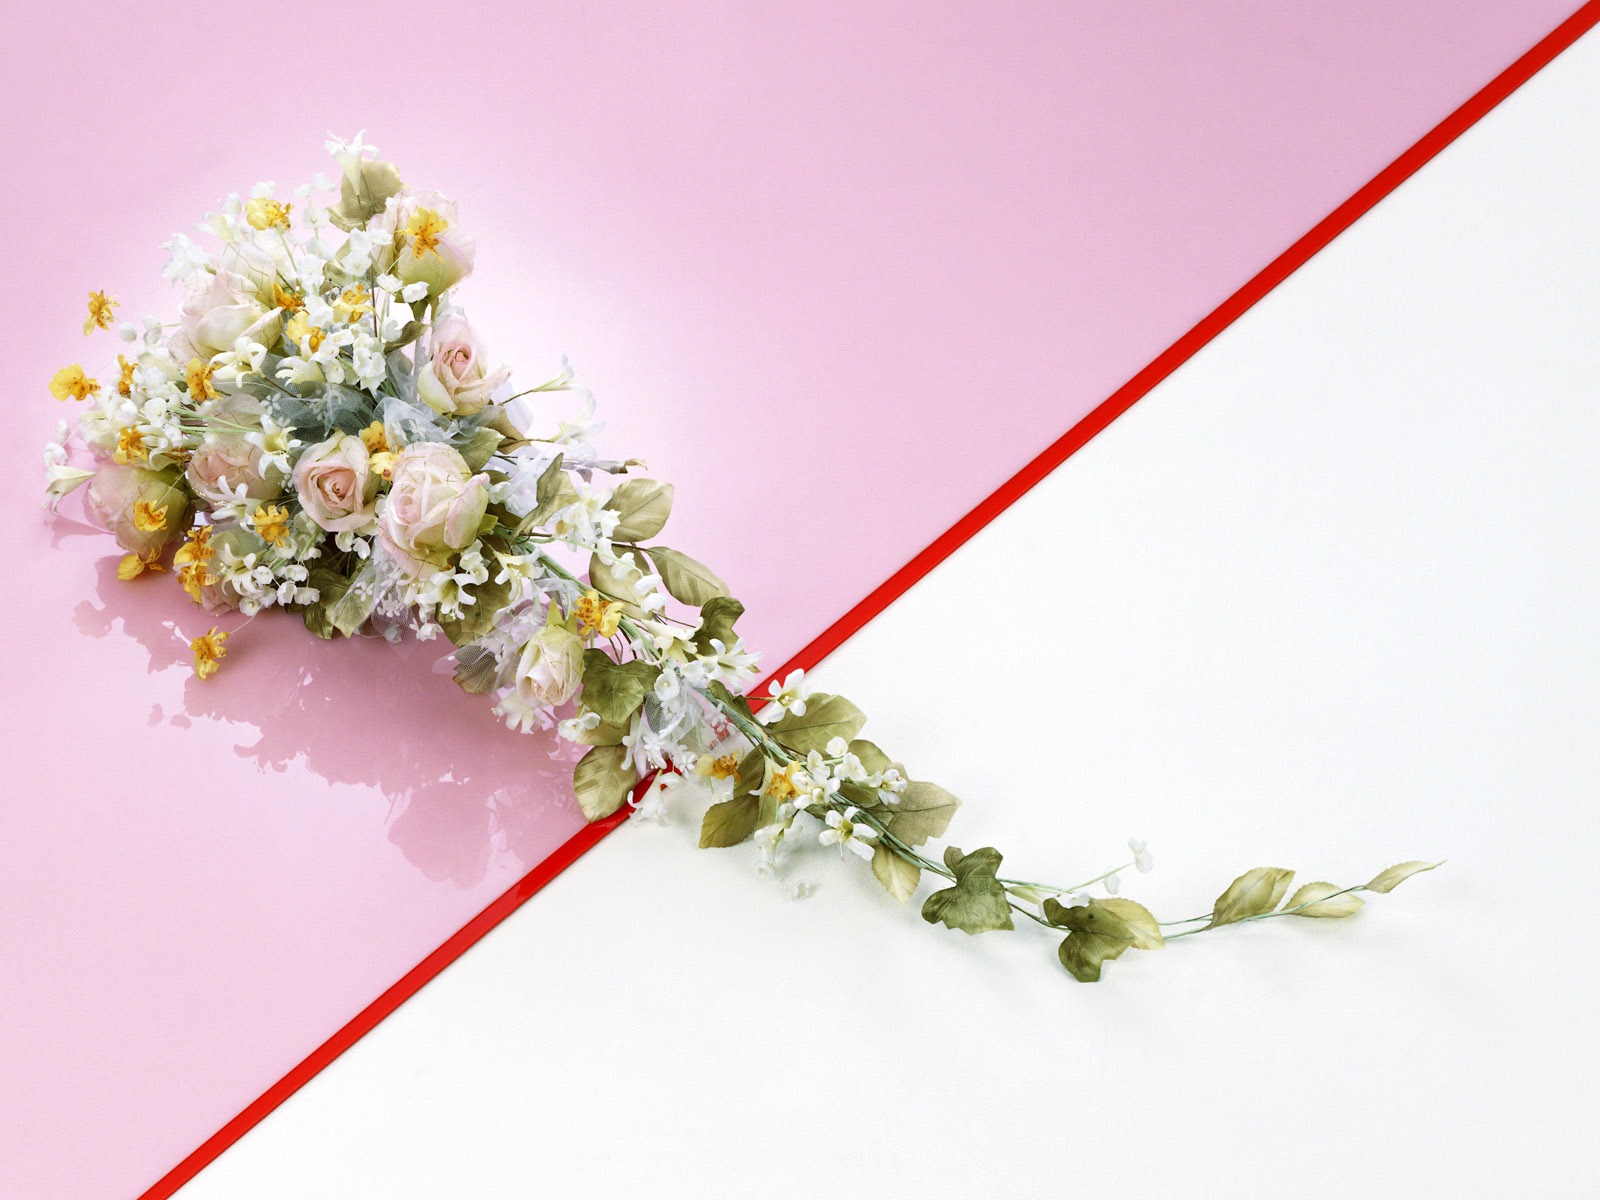 婚庆鲜花物品壁纸(一)20 - 1600x1200